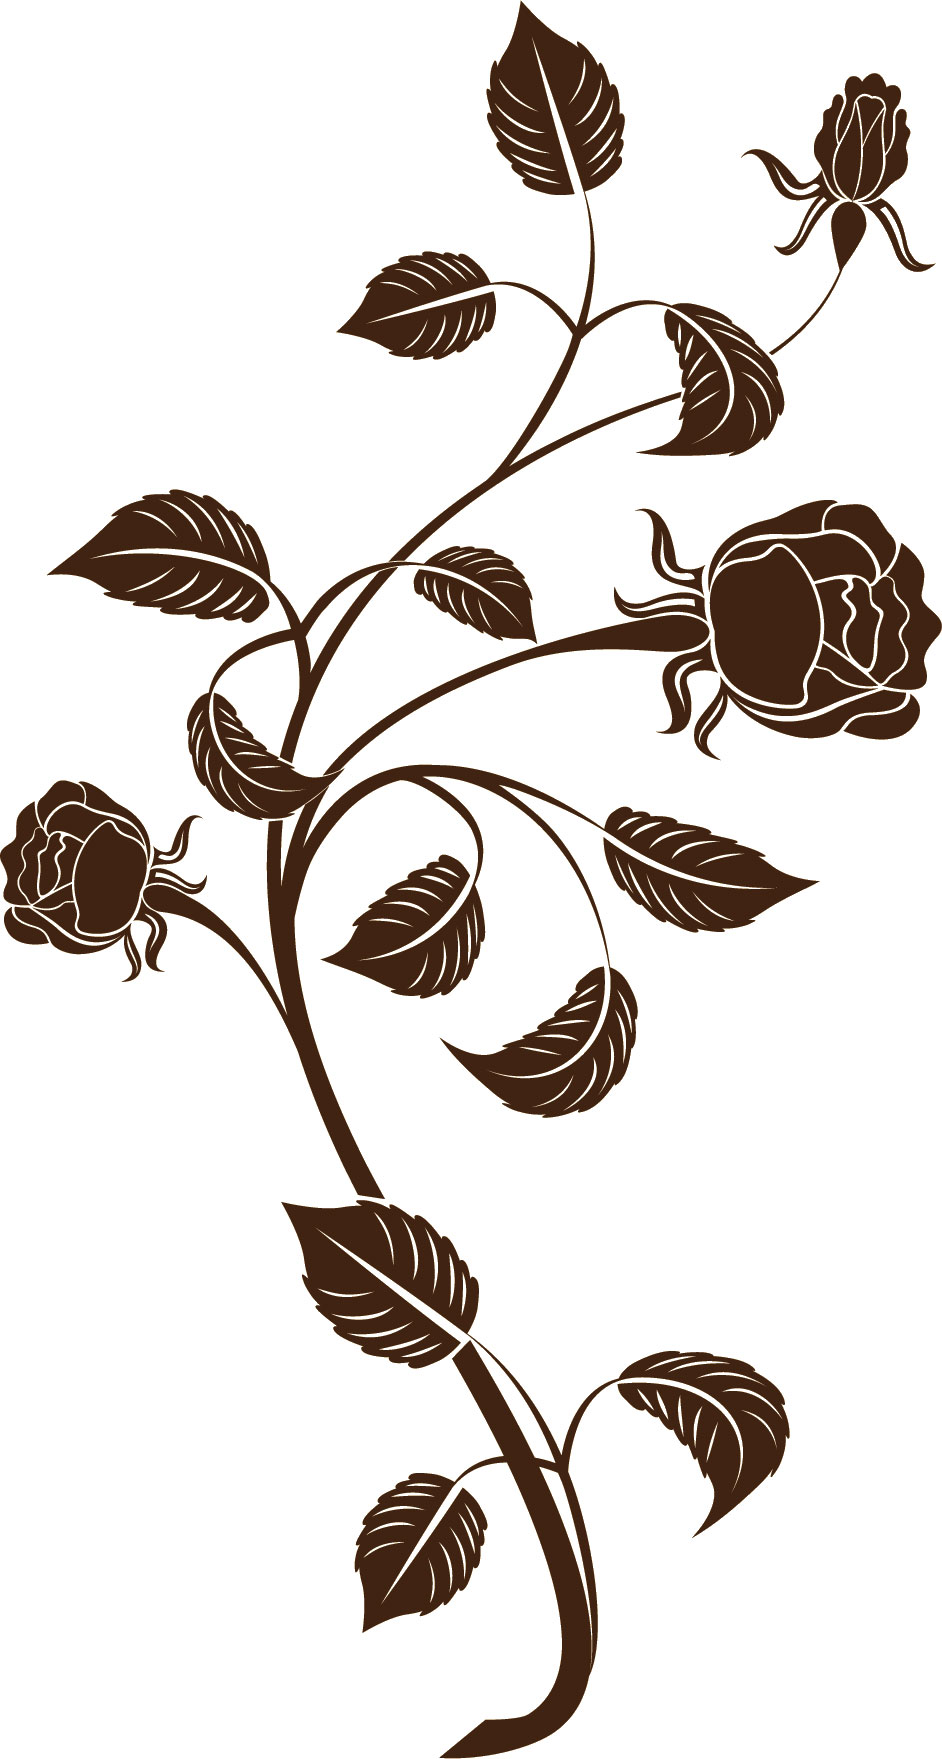 バラの画像 イラスト 白黒 モノクロ No 748 こげ茶 バラ 茎葉